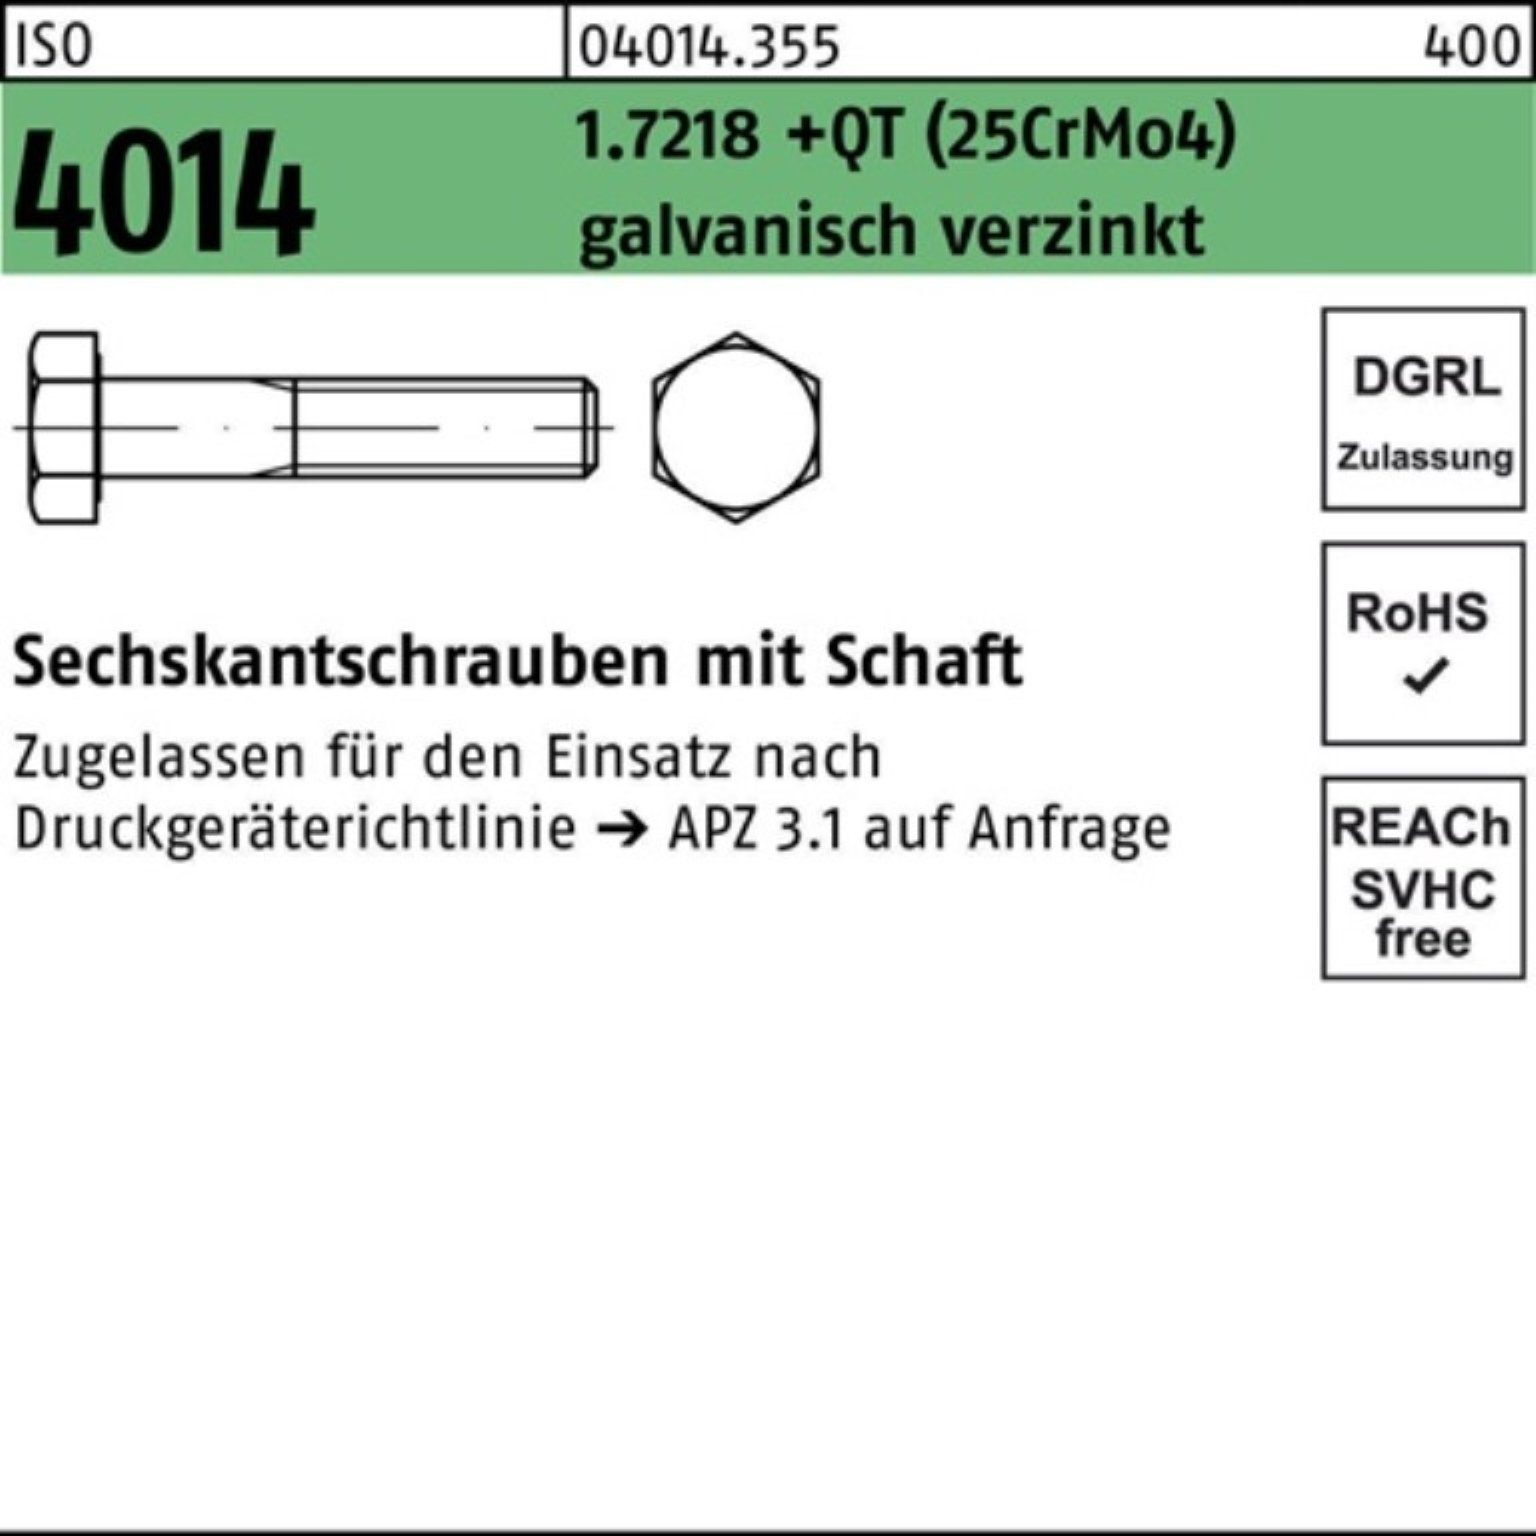 Bufab Sechskantschraube Schaft 4014 100er M36x150 Pack (25CrM 1.7218 ISO Sechskantschraube +QT